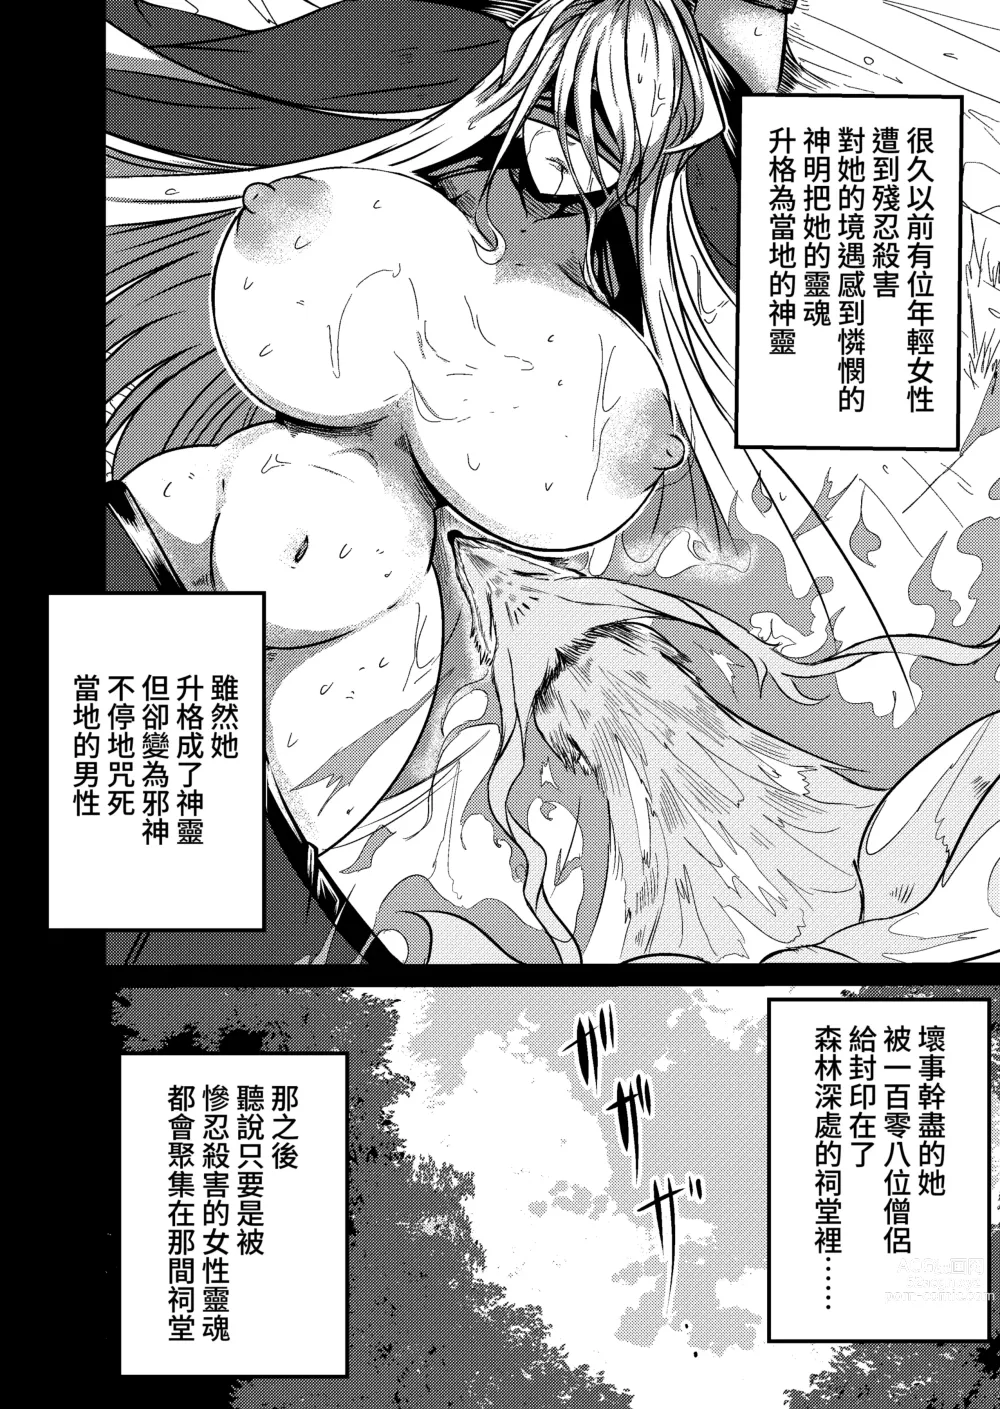 Page 2 of doujinshi Fuuin Hodoitara Damasare Tsukarete Shibo Shirage Jinsei Konna Kotonara Tokanakya Yokatta